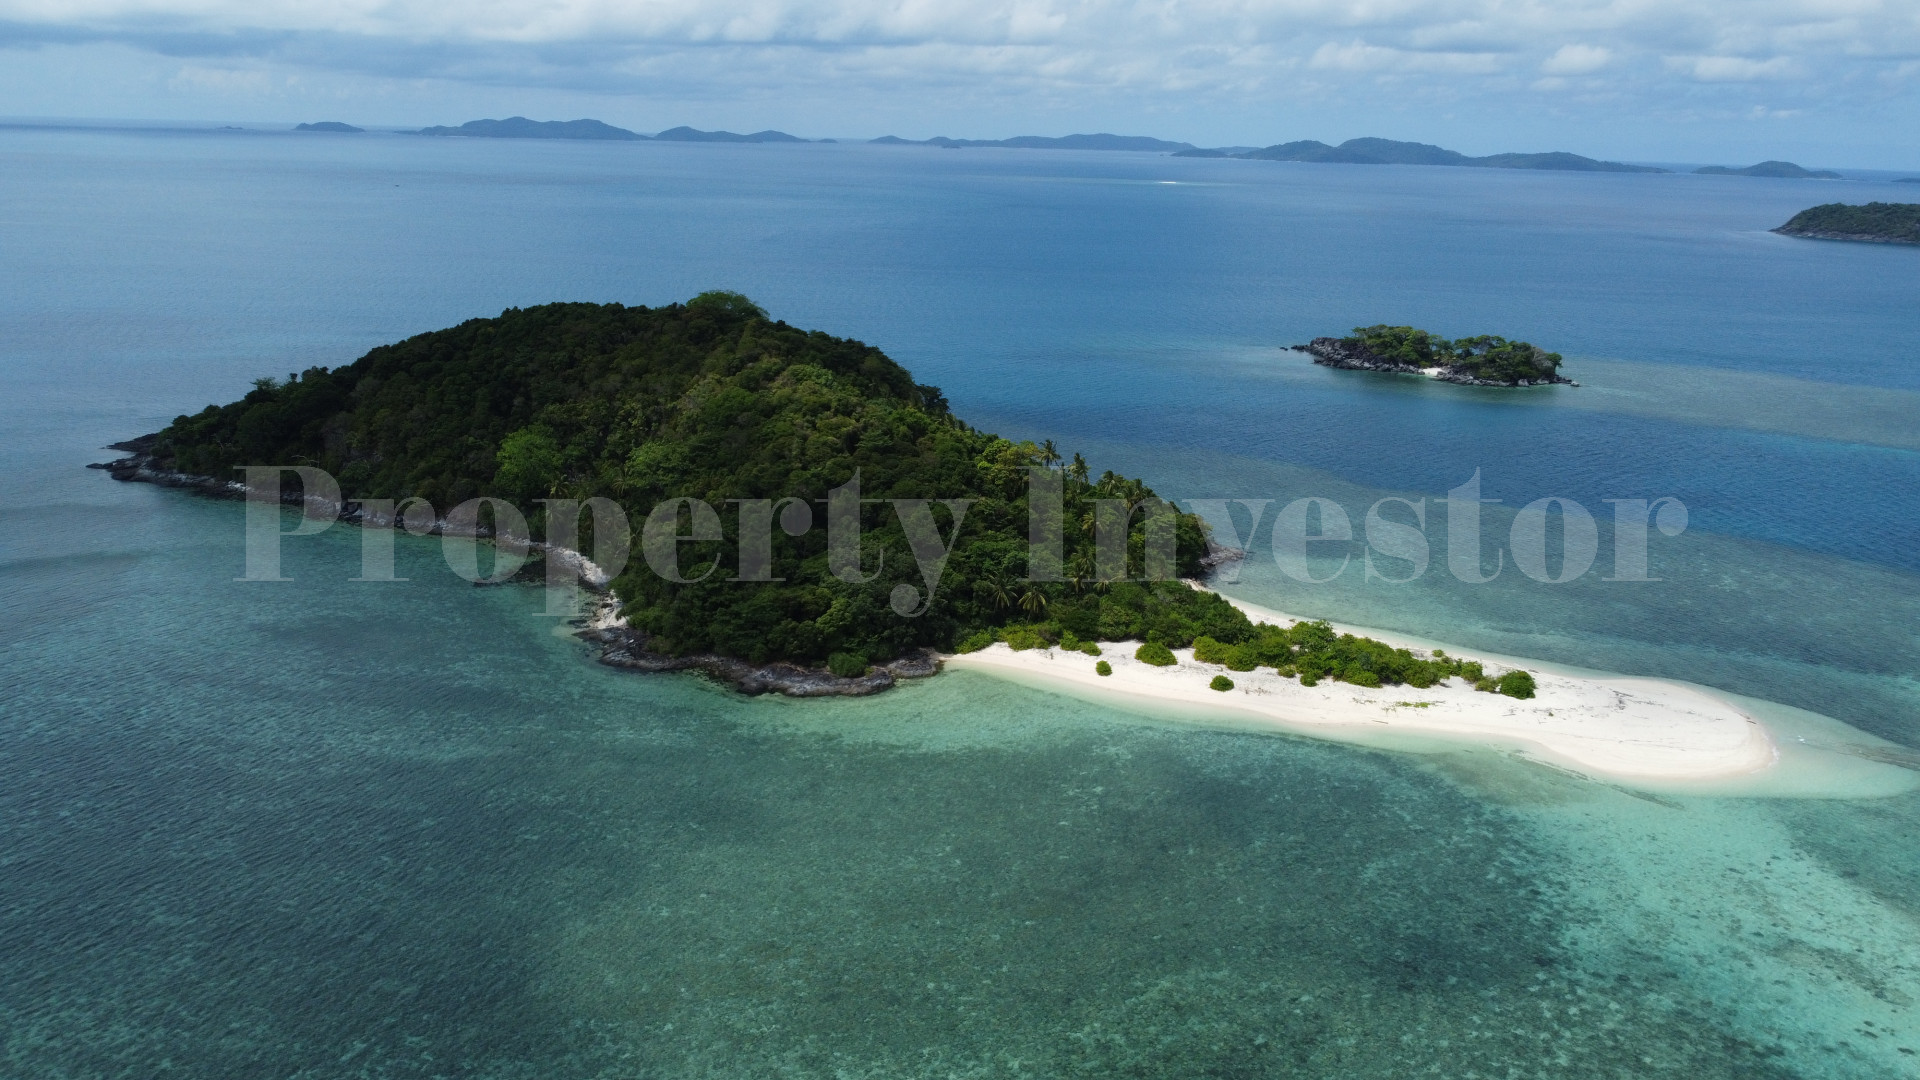 Продаётся нетронутый дикий остров 7 гектар под коммерческое развитие на островах Риау, Индонезия